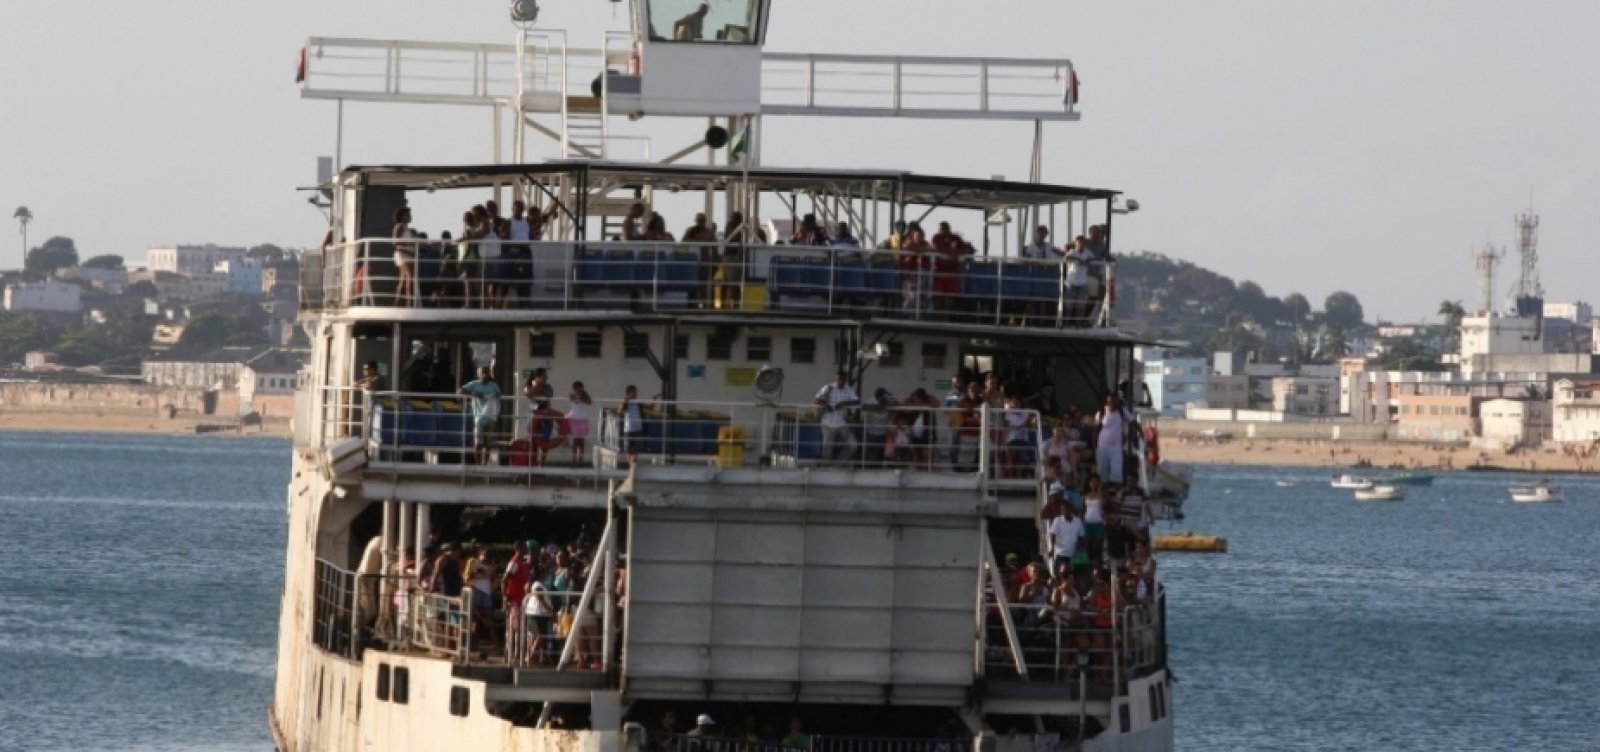 Ferry-boat: tempo de espera para veículos chega a duas horas em São Joaquim